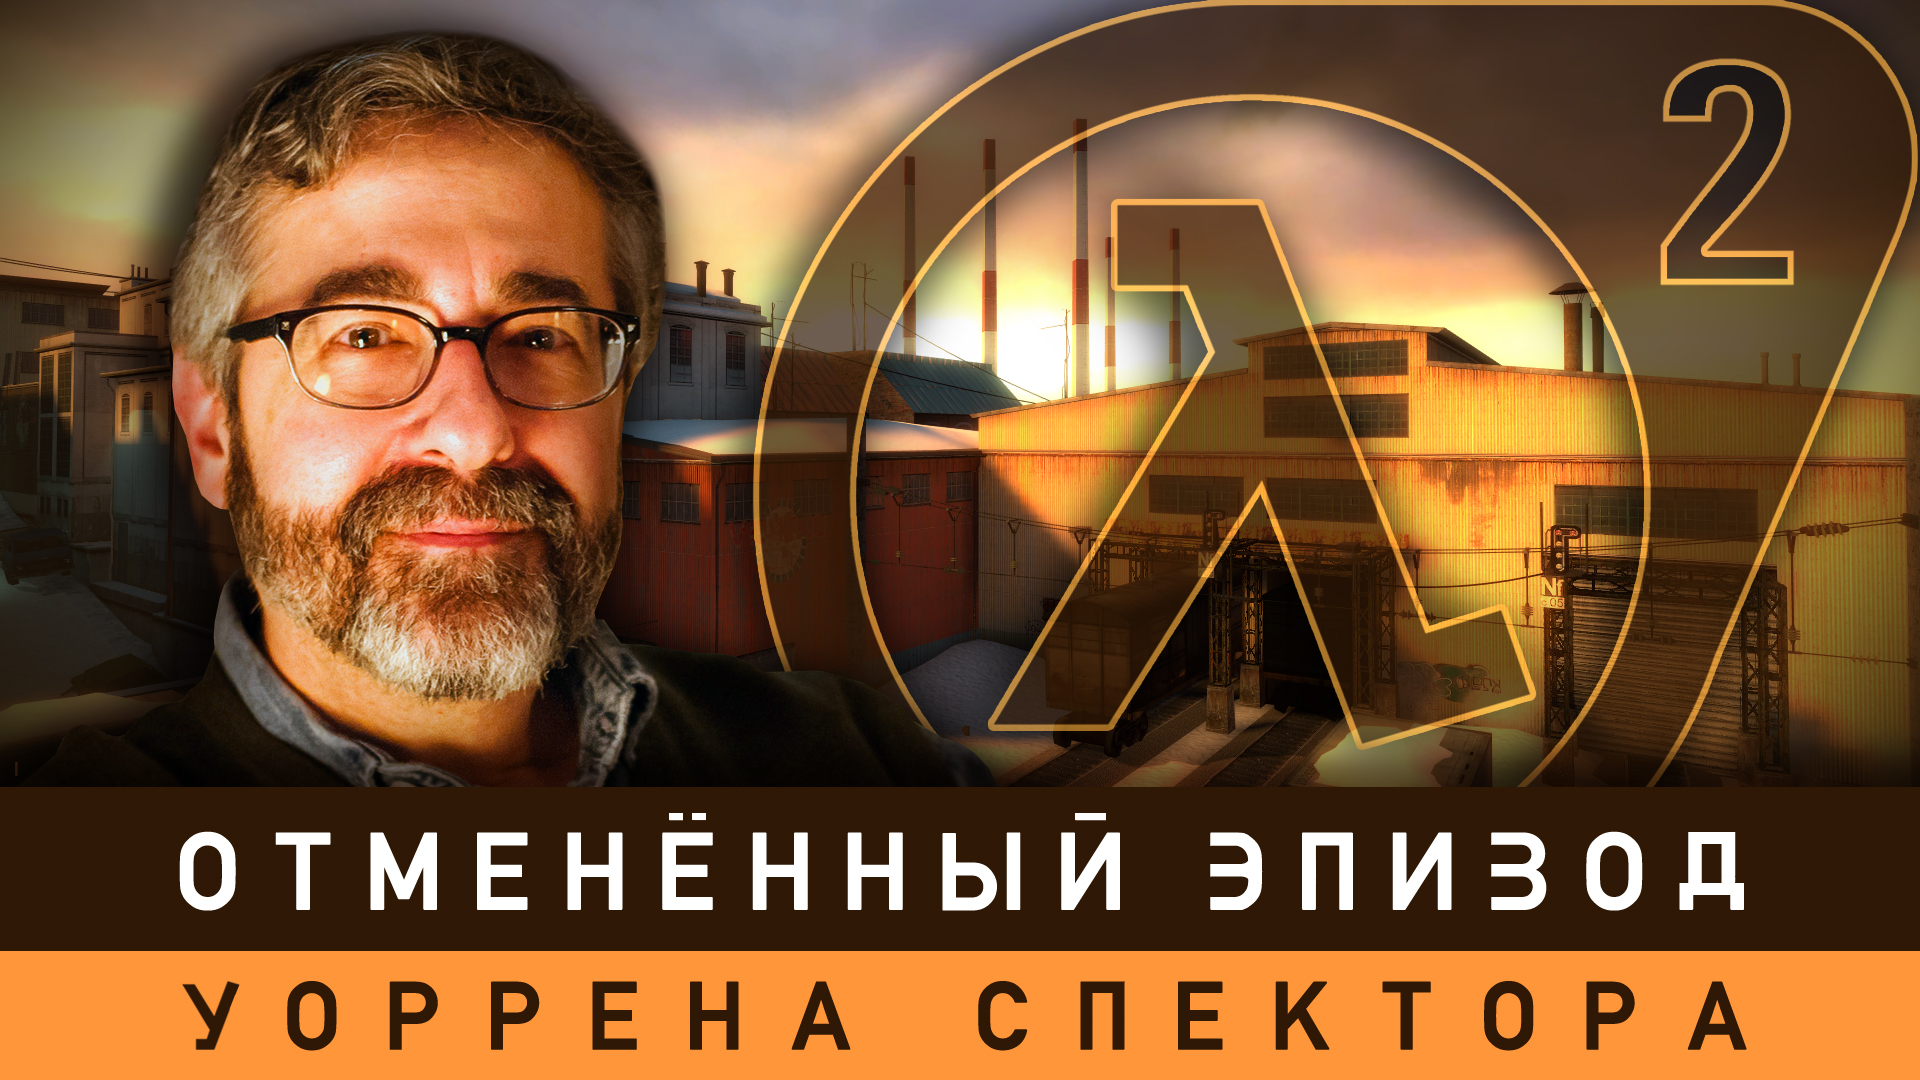 Half-Life 2 - Отменённый эпизод от Уоррена Спектора